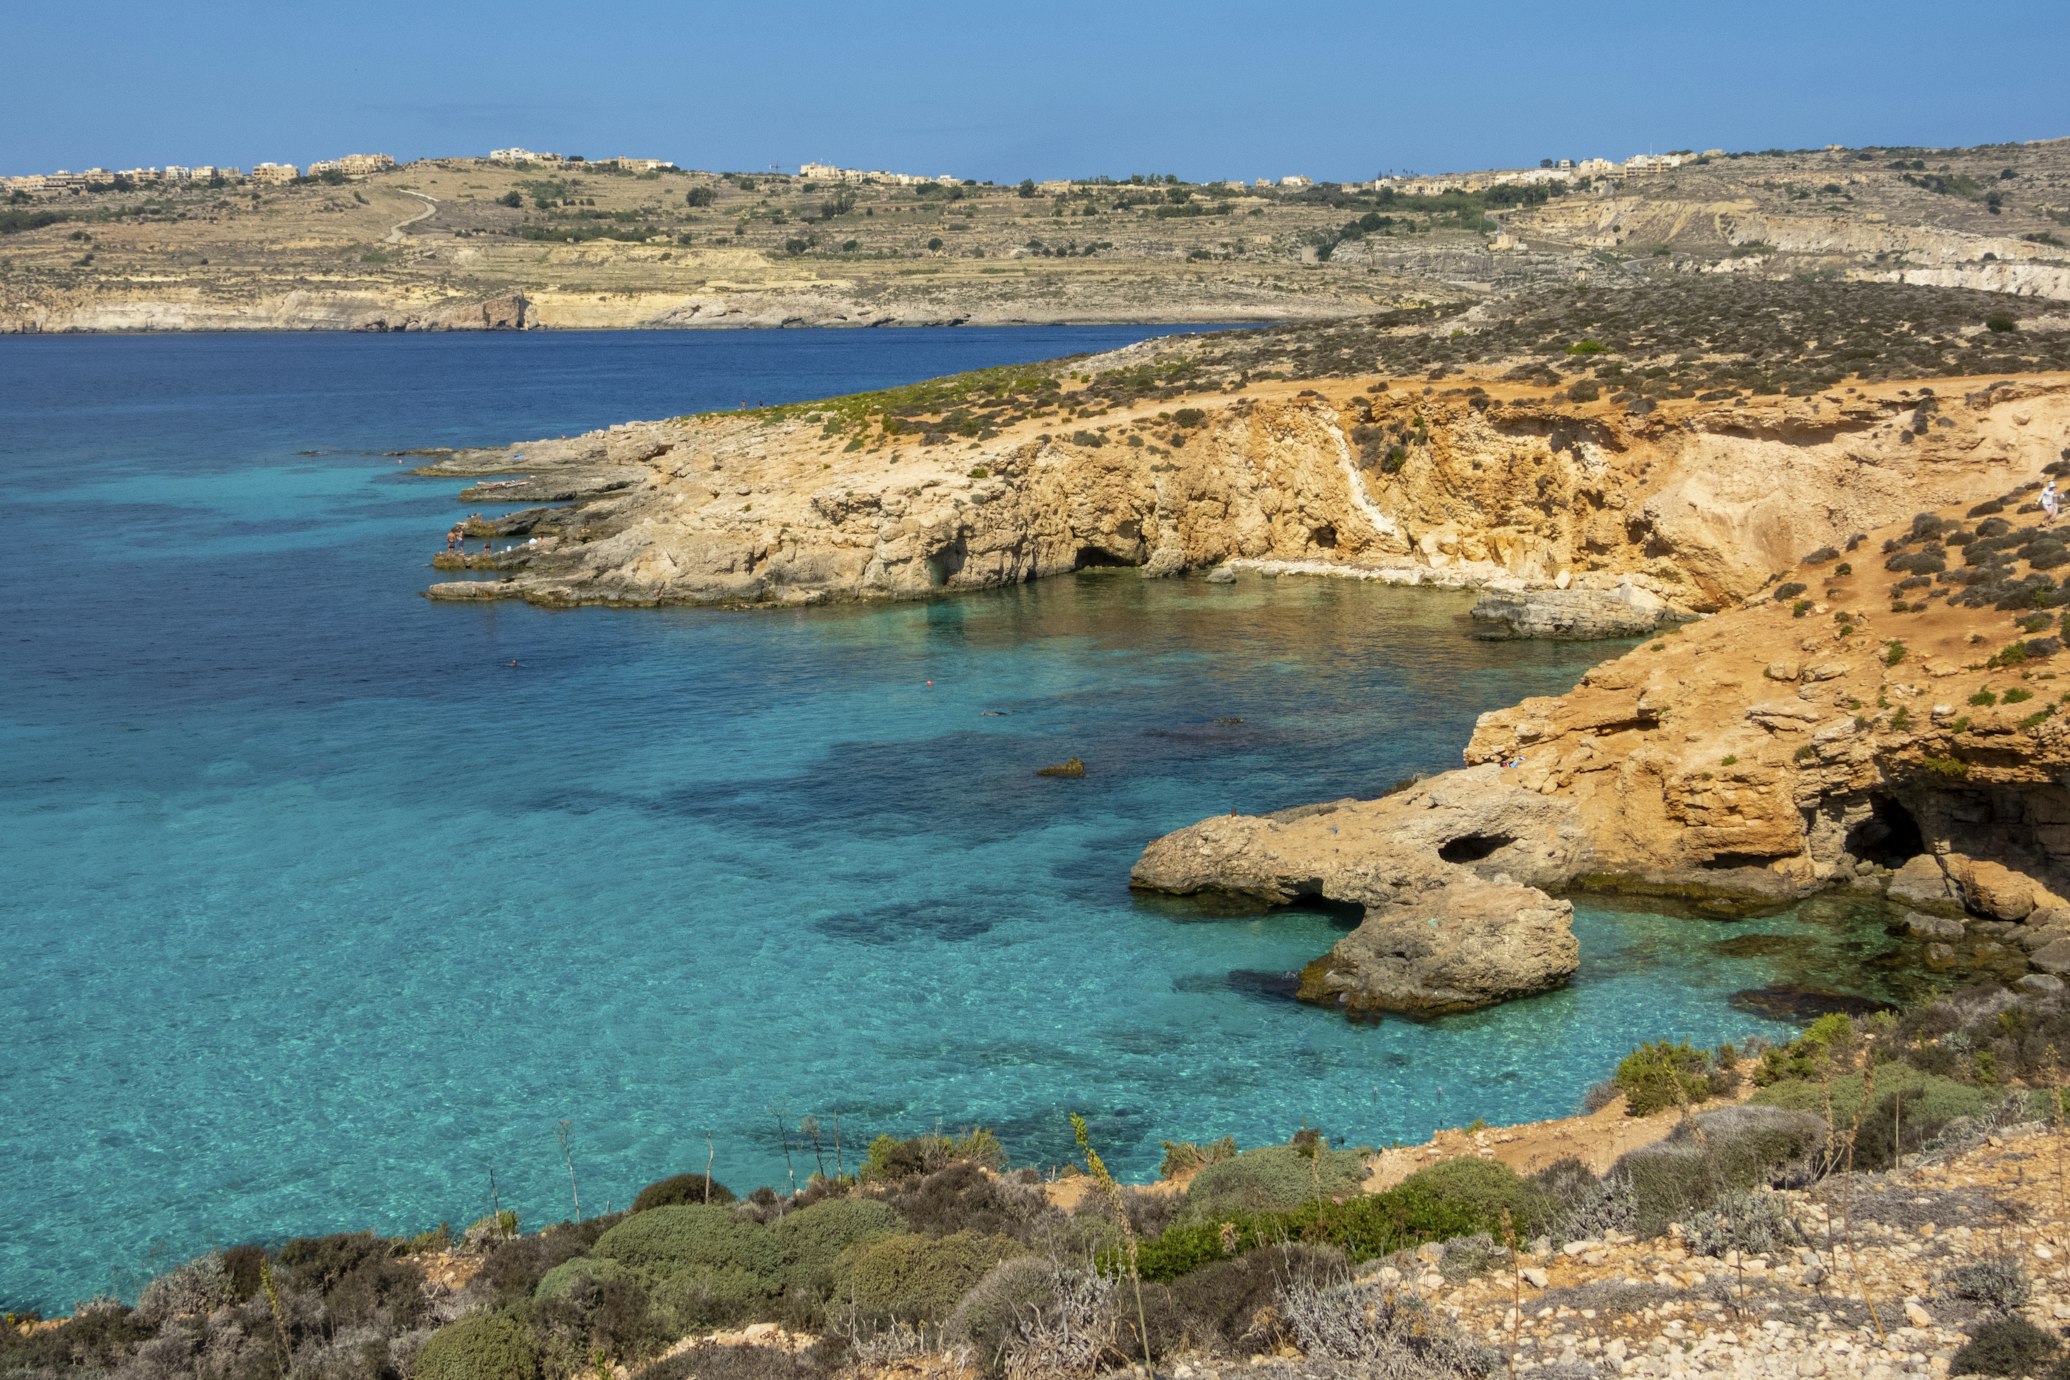 Le scogliere si stagliano sul mare azzurro della laguna blu di Malta